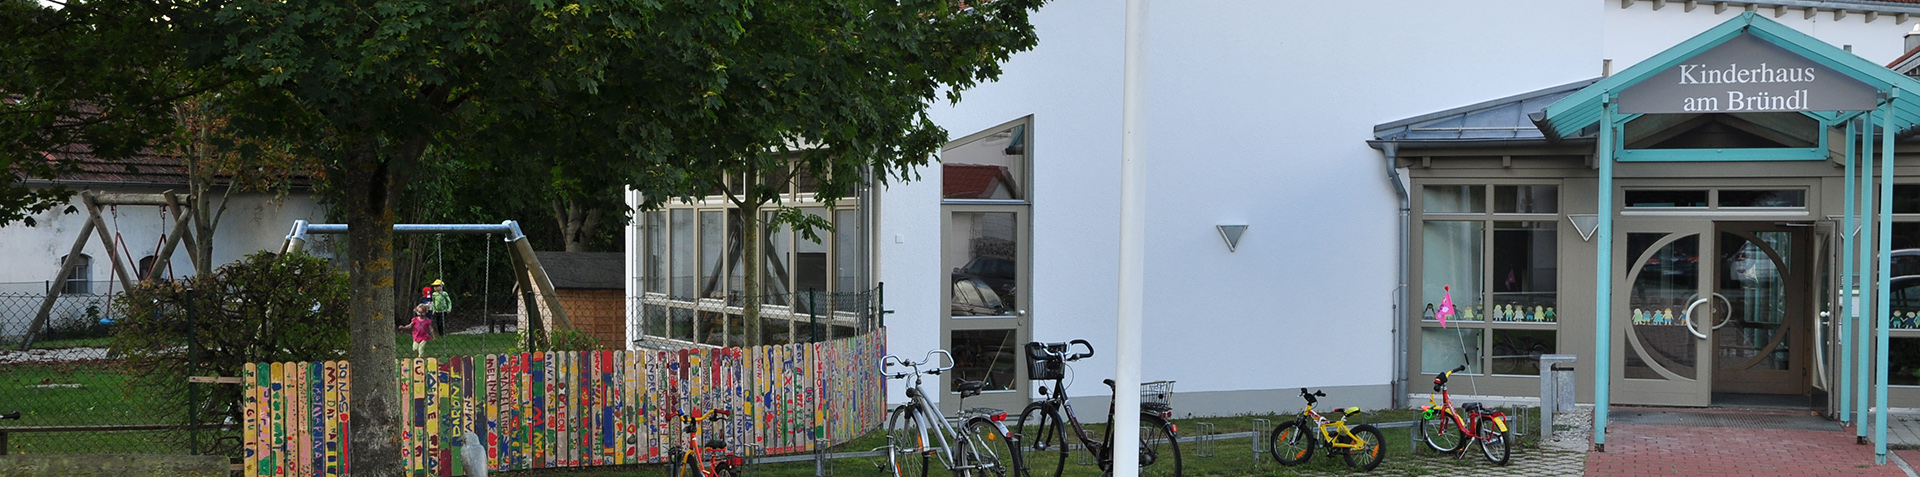 Bildrotation Kinderhaus am Bründl - Eingang